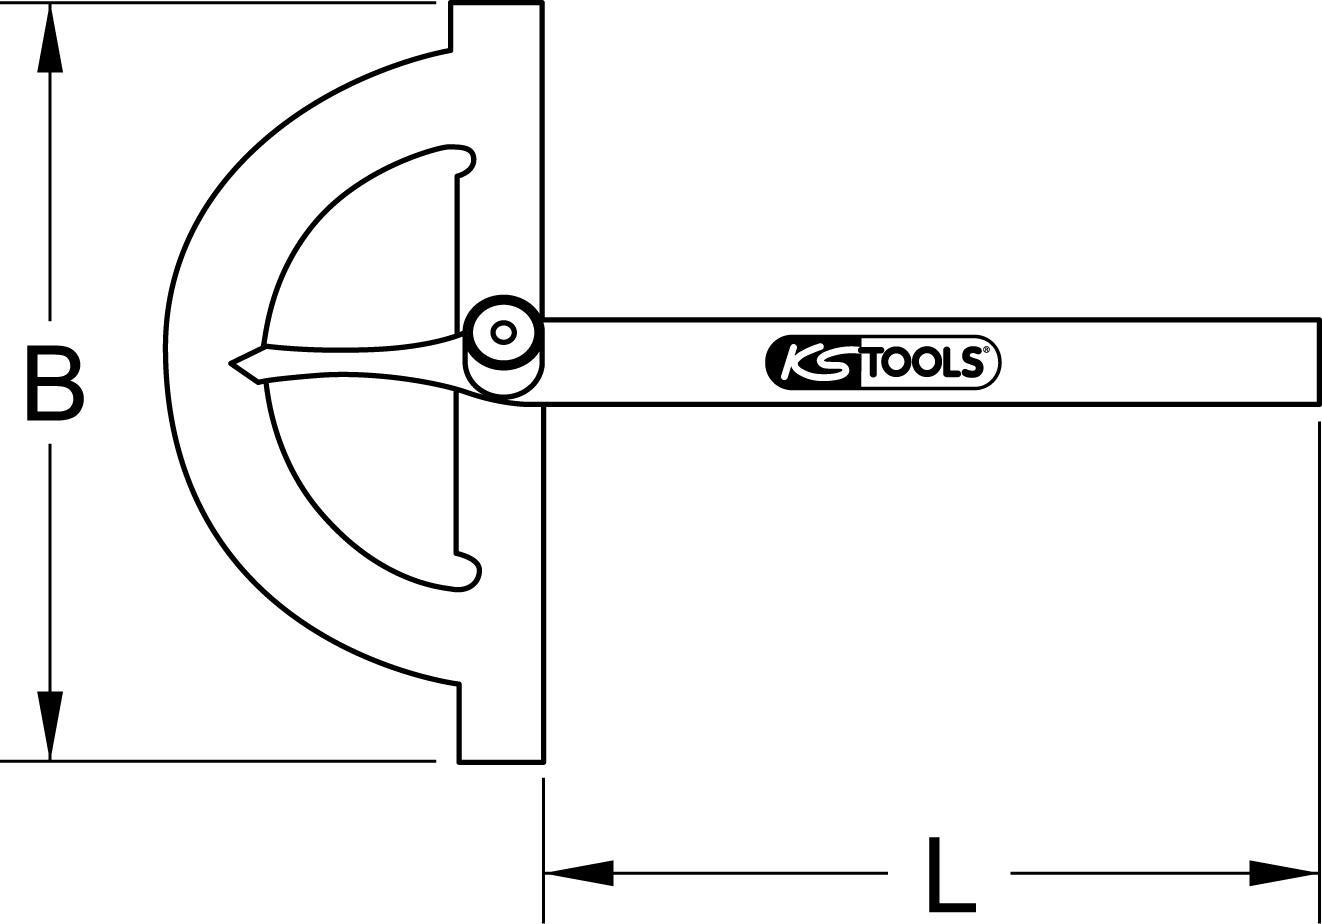 KS TOOLS Winkelgradmesser mit offenen Bogen, 1000mm (300.0649)